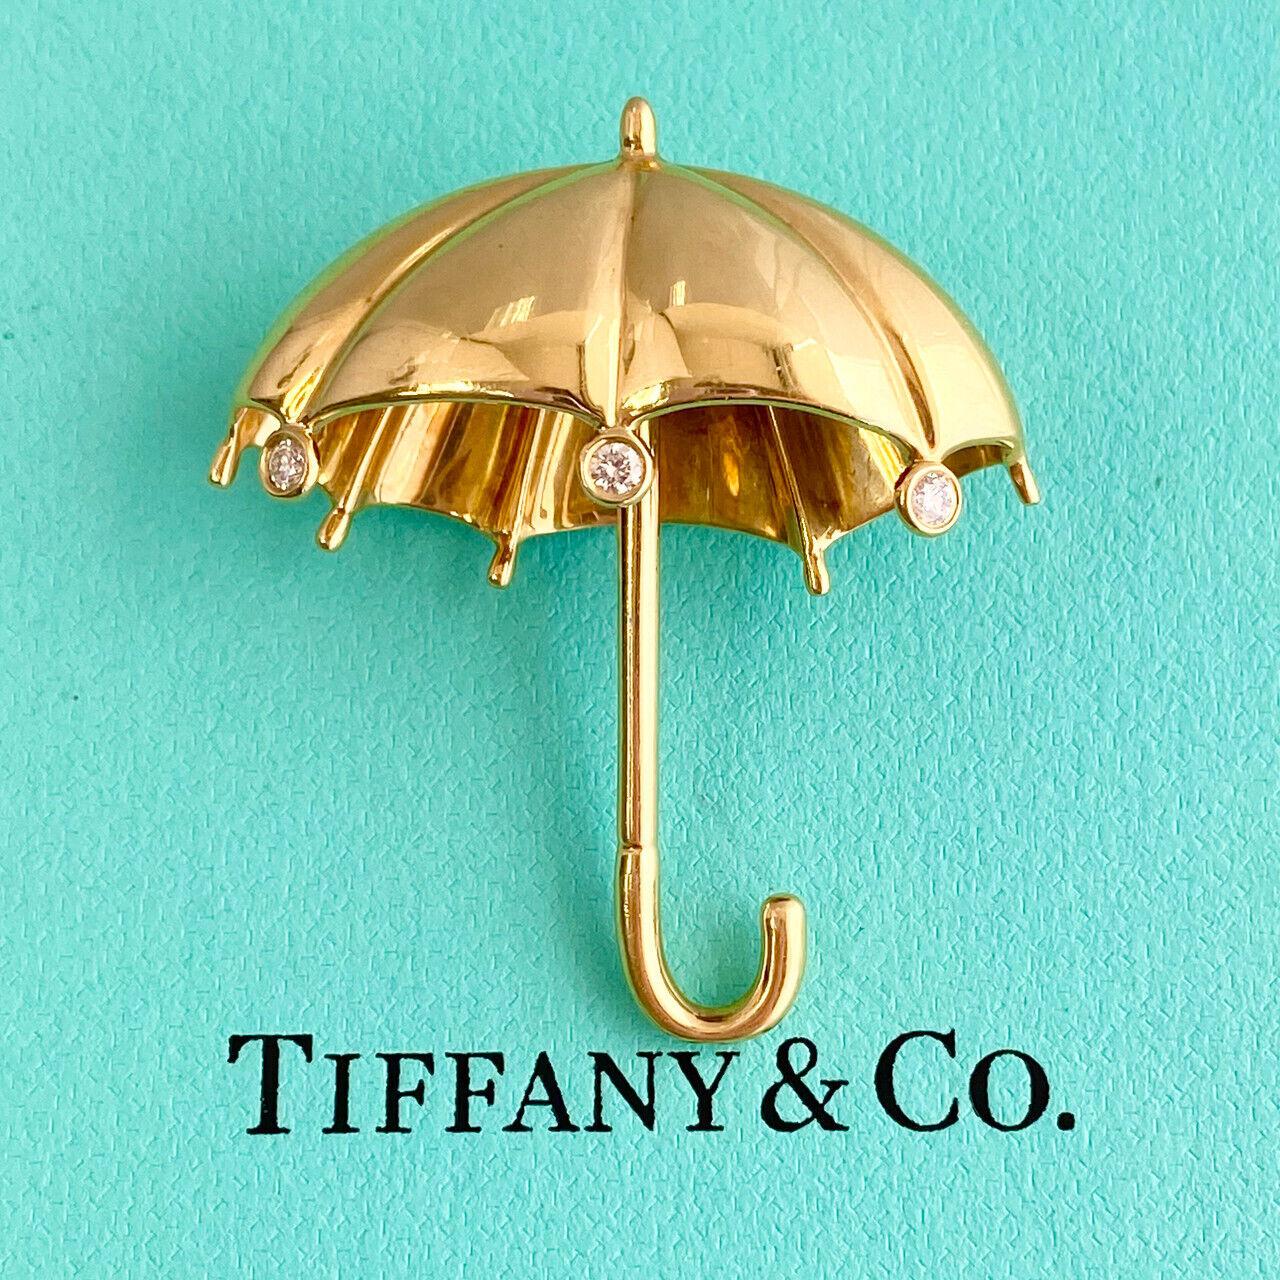 Spécifications :
D'occasion (Très bon état)
Marque : Tiffany & Co
Métal : or 18K (Au 79,80-75%)
Poids : 13,4 gr
Pierre principale : 3ps diamants ronds (2mm chacun)